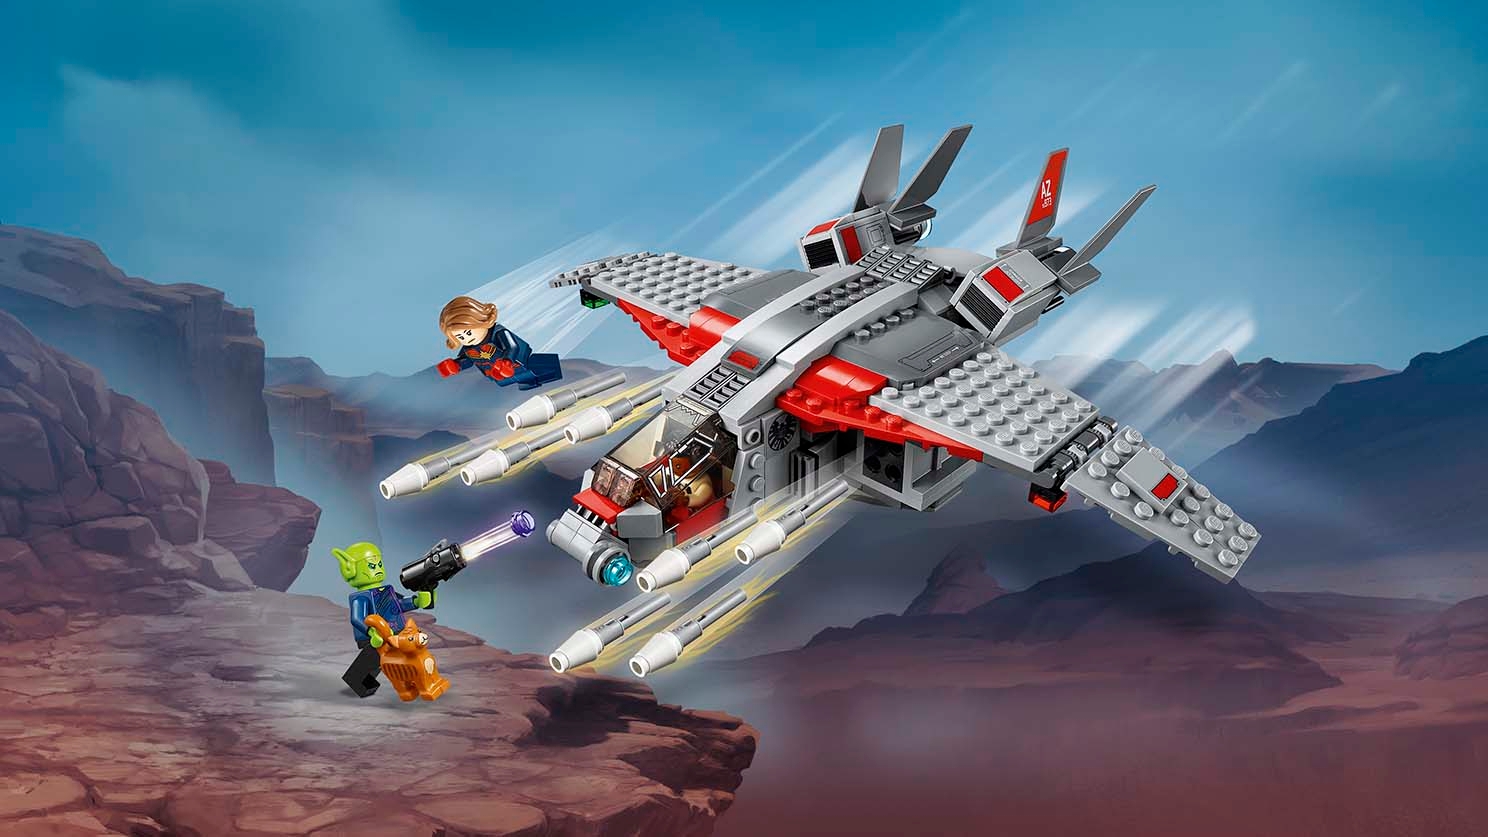 キャプテン・マーベルとスクラルの襲撃 - ビデオ - LEGO.comキッズ